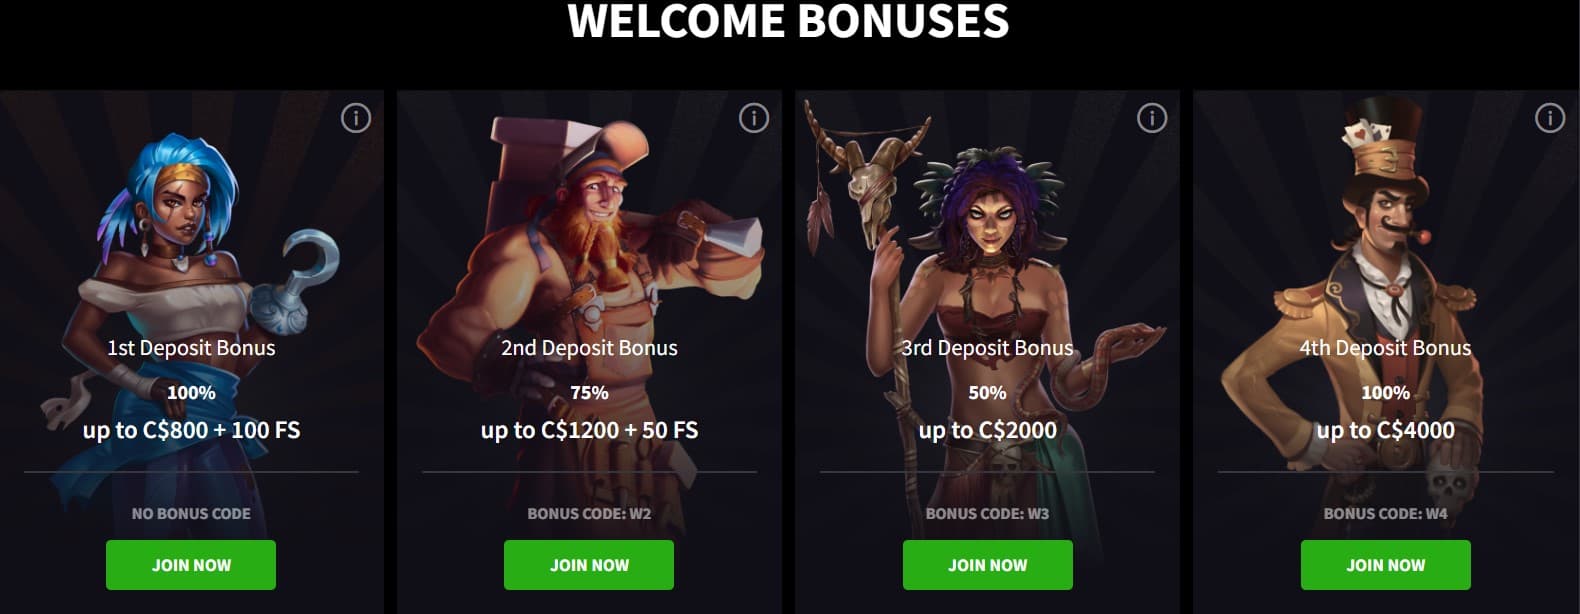 mirax welcome bonus